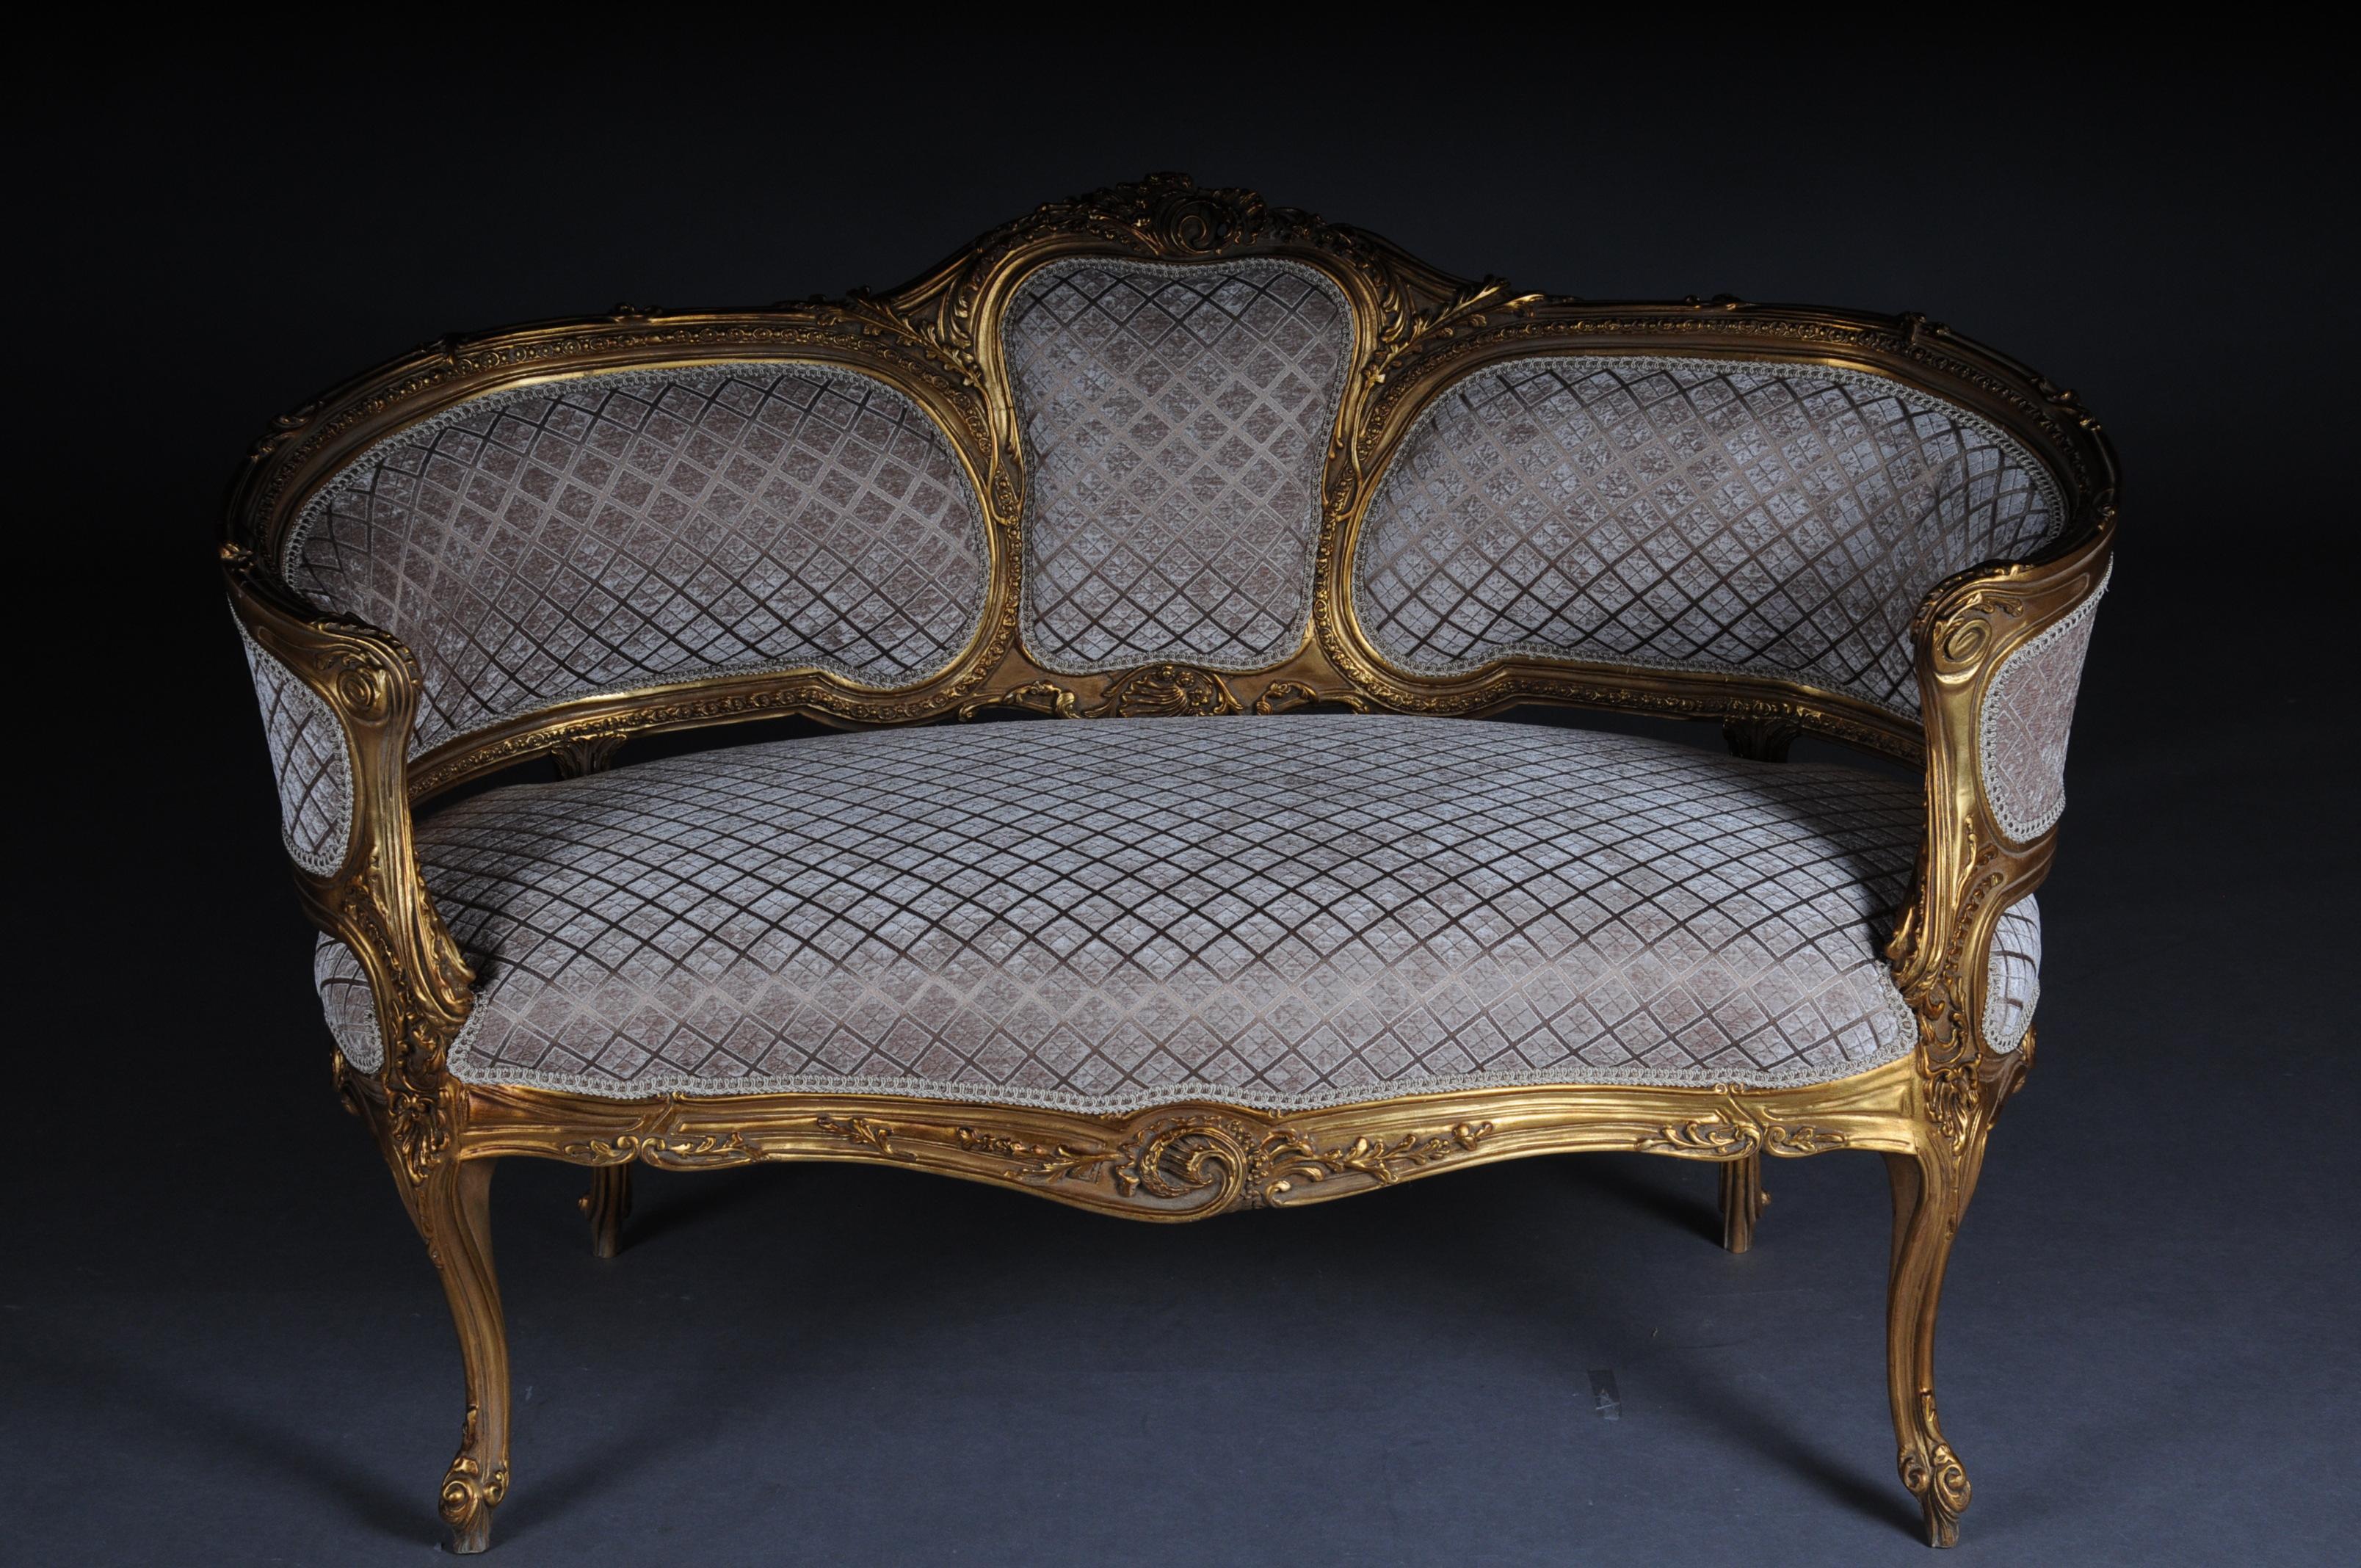 Luxuriöses Sofa, Kanapee, Couch im Rokoko- oder Louis XV-Stil.

Massives Buchenholz, geschnitzt und vergoldet. Ansteigende Rückenlehneneinfassung mit durchbrochener Rocaillebekrönung. Angemessen geschwungener Rahmen mit reich geschnitztem